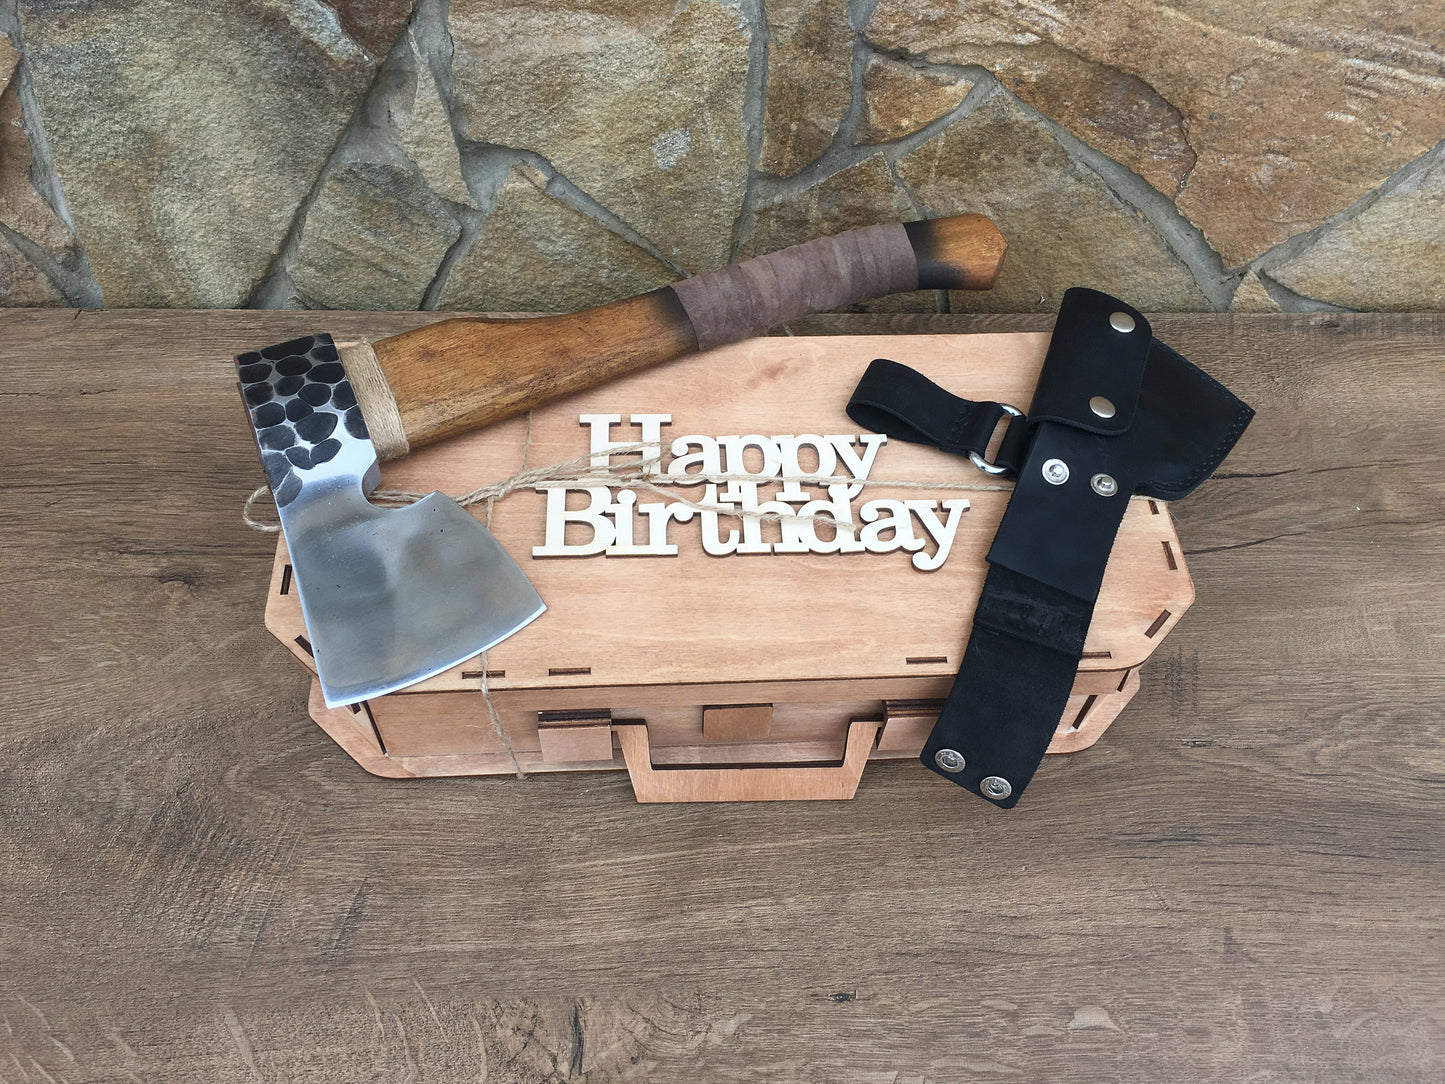 Mens axe, stress relief, viking axe, axe gift, mens birthday gift, birthday gift men,birthday gifts men,his birthday gift,hatchet,mens gifts